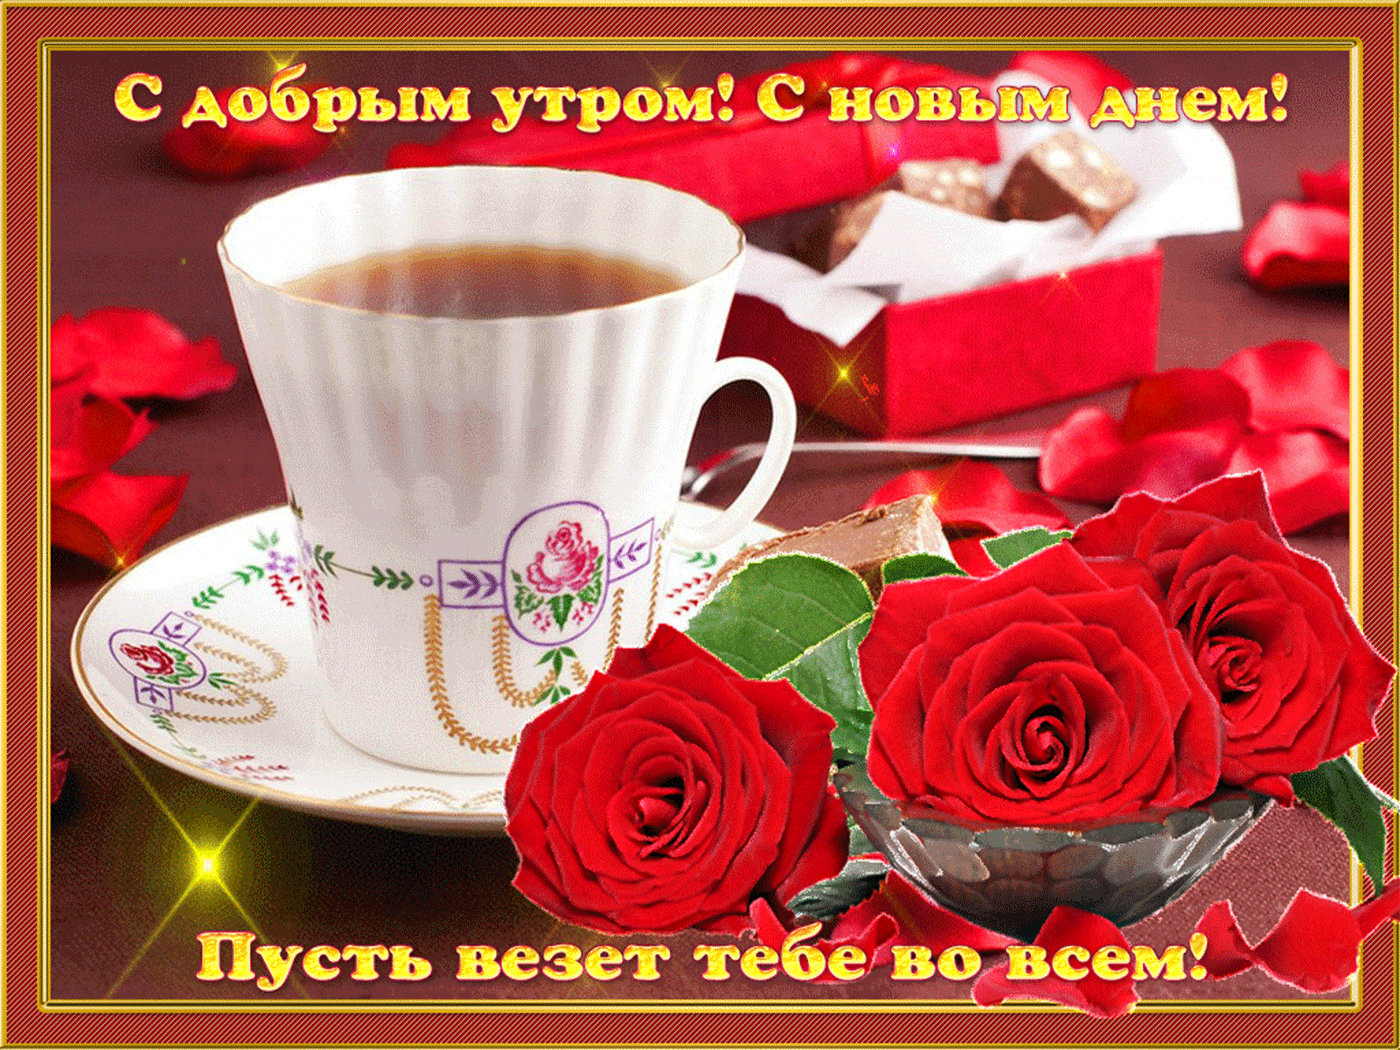 Доброе утро доброго дня и хорошего настроения. Пожелания доброго утра. Открытки с добрым утром. Доброе утро прекрасного дня. Красивые поздравления с добрым утром.